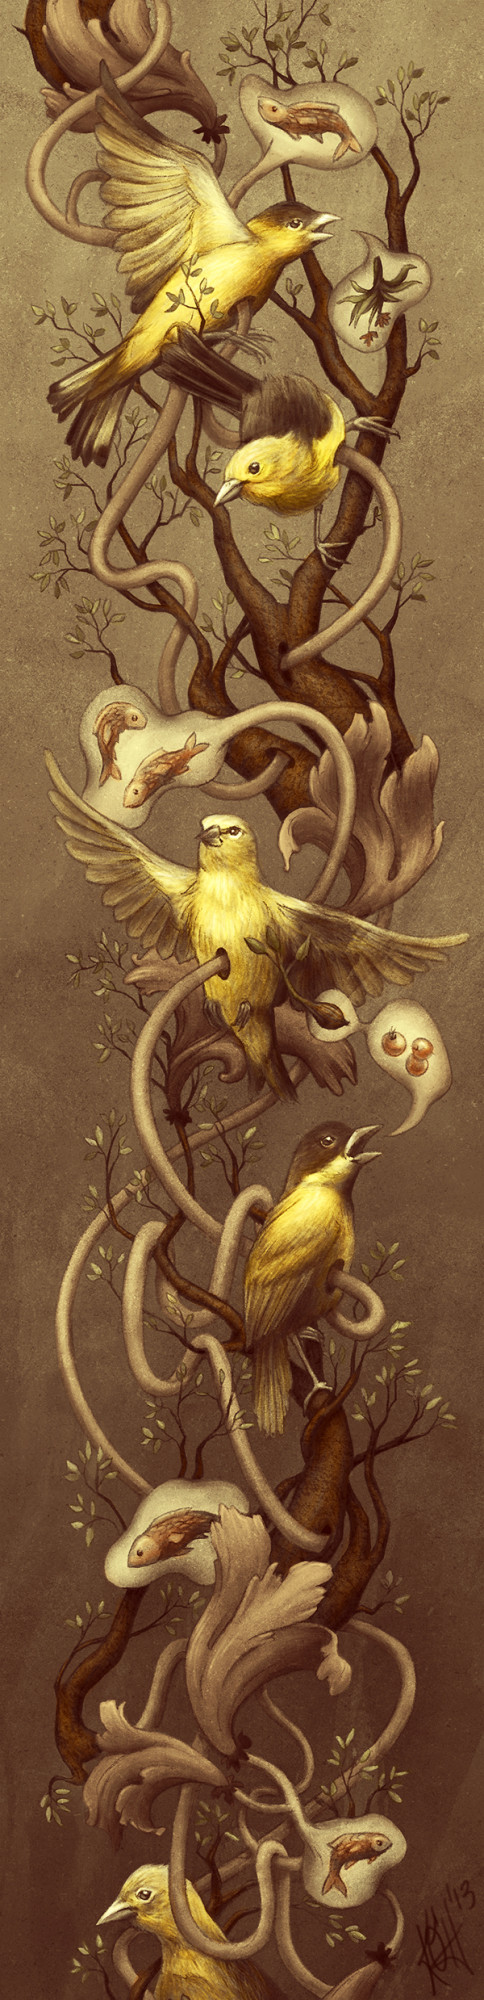 GOLDFINCH - Kate O'Hara - biological Illustration